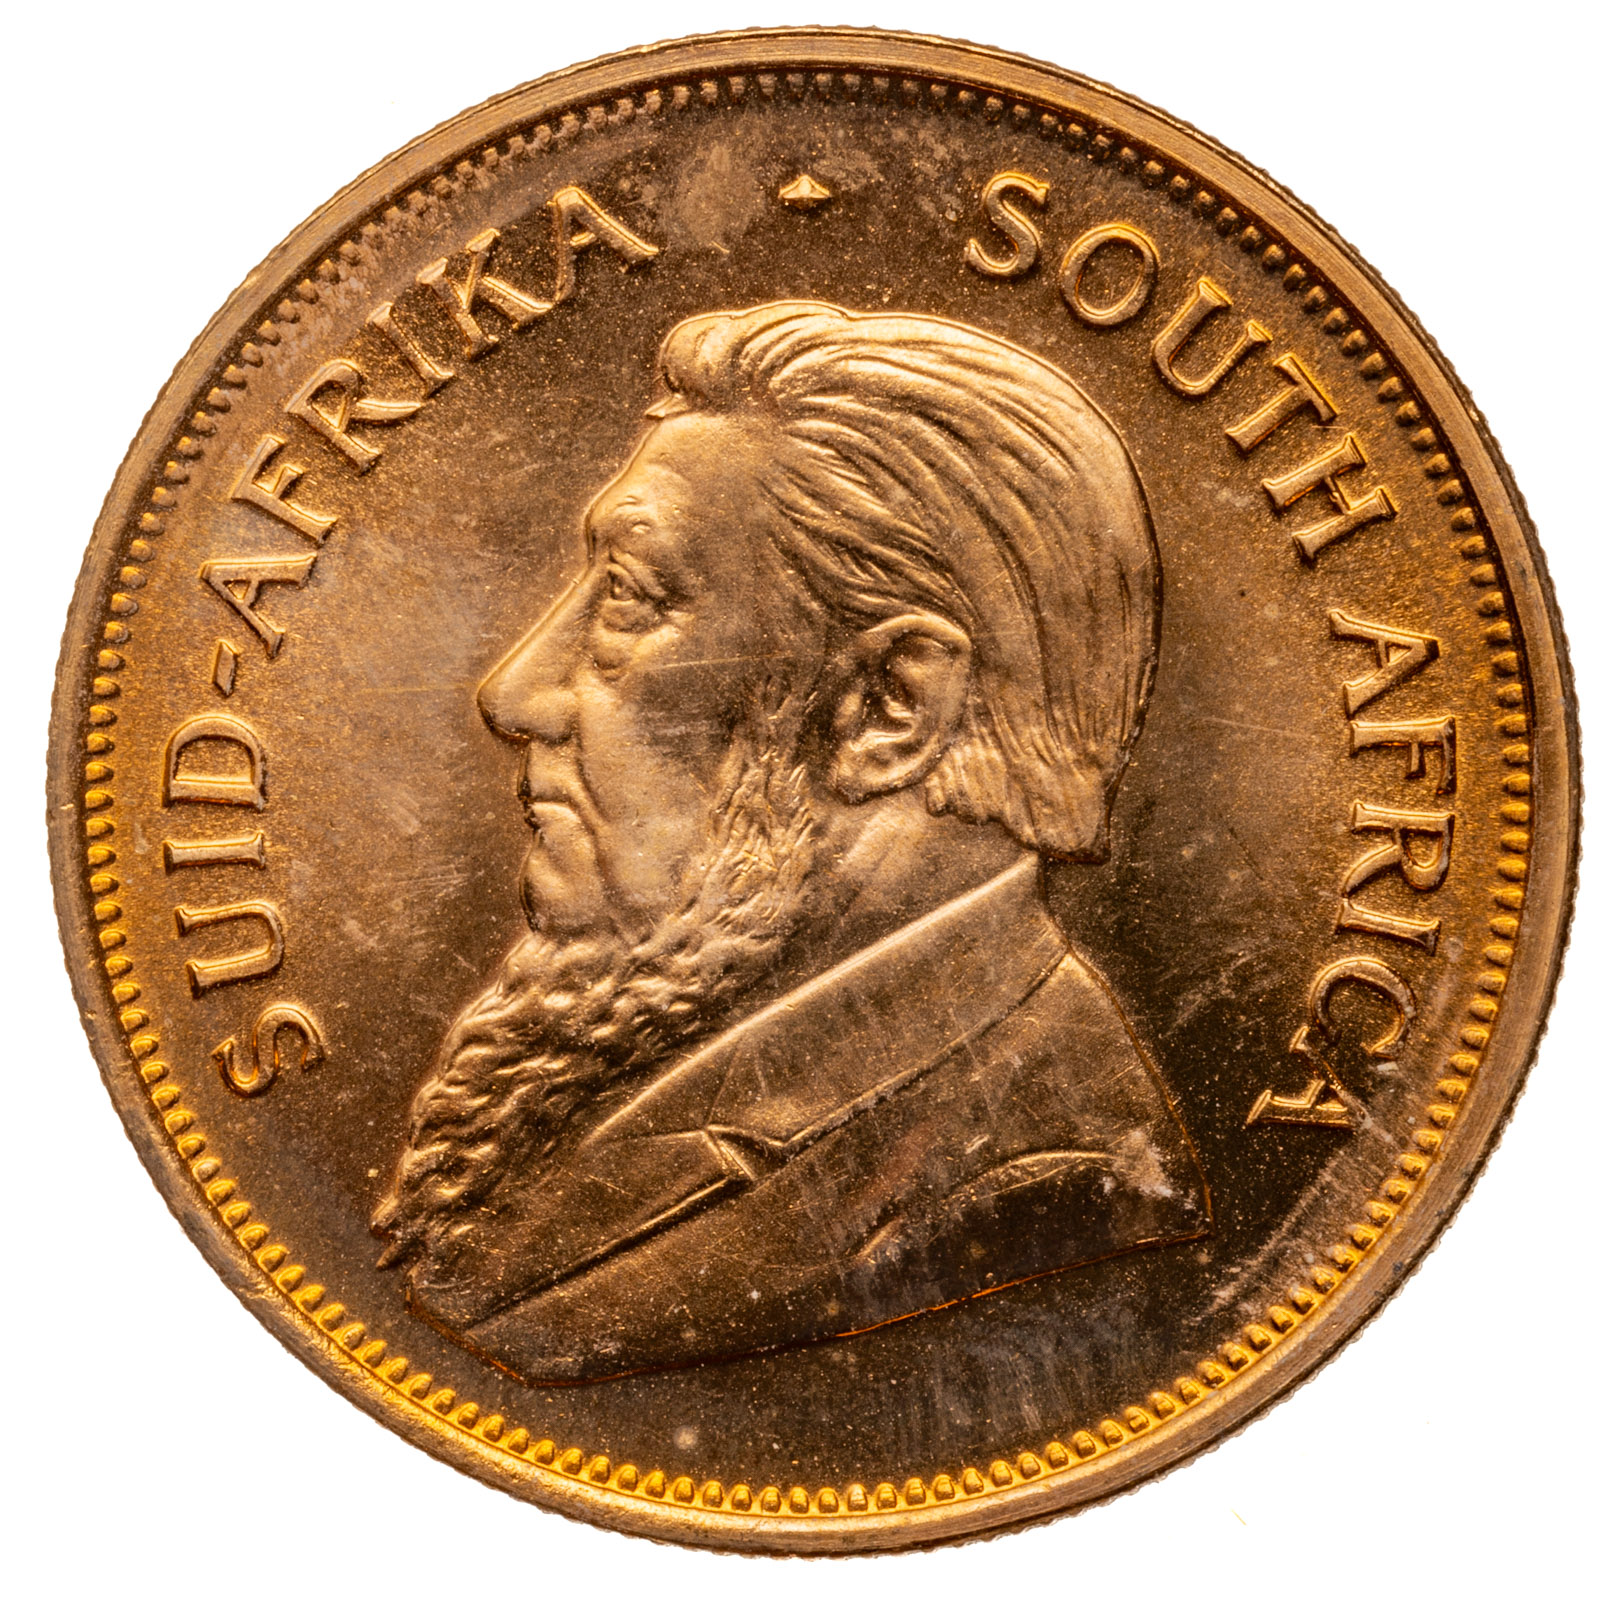 1875 GOLD KRUGERRAND - SOUTH AFRICA